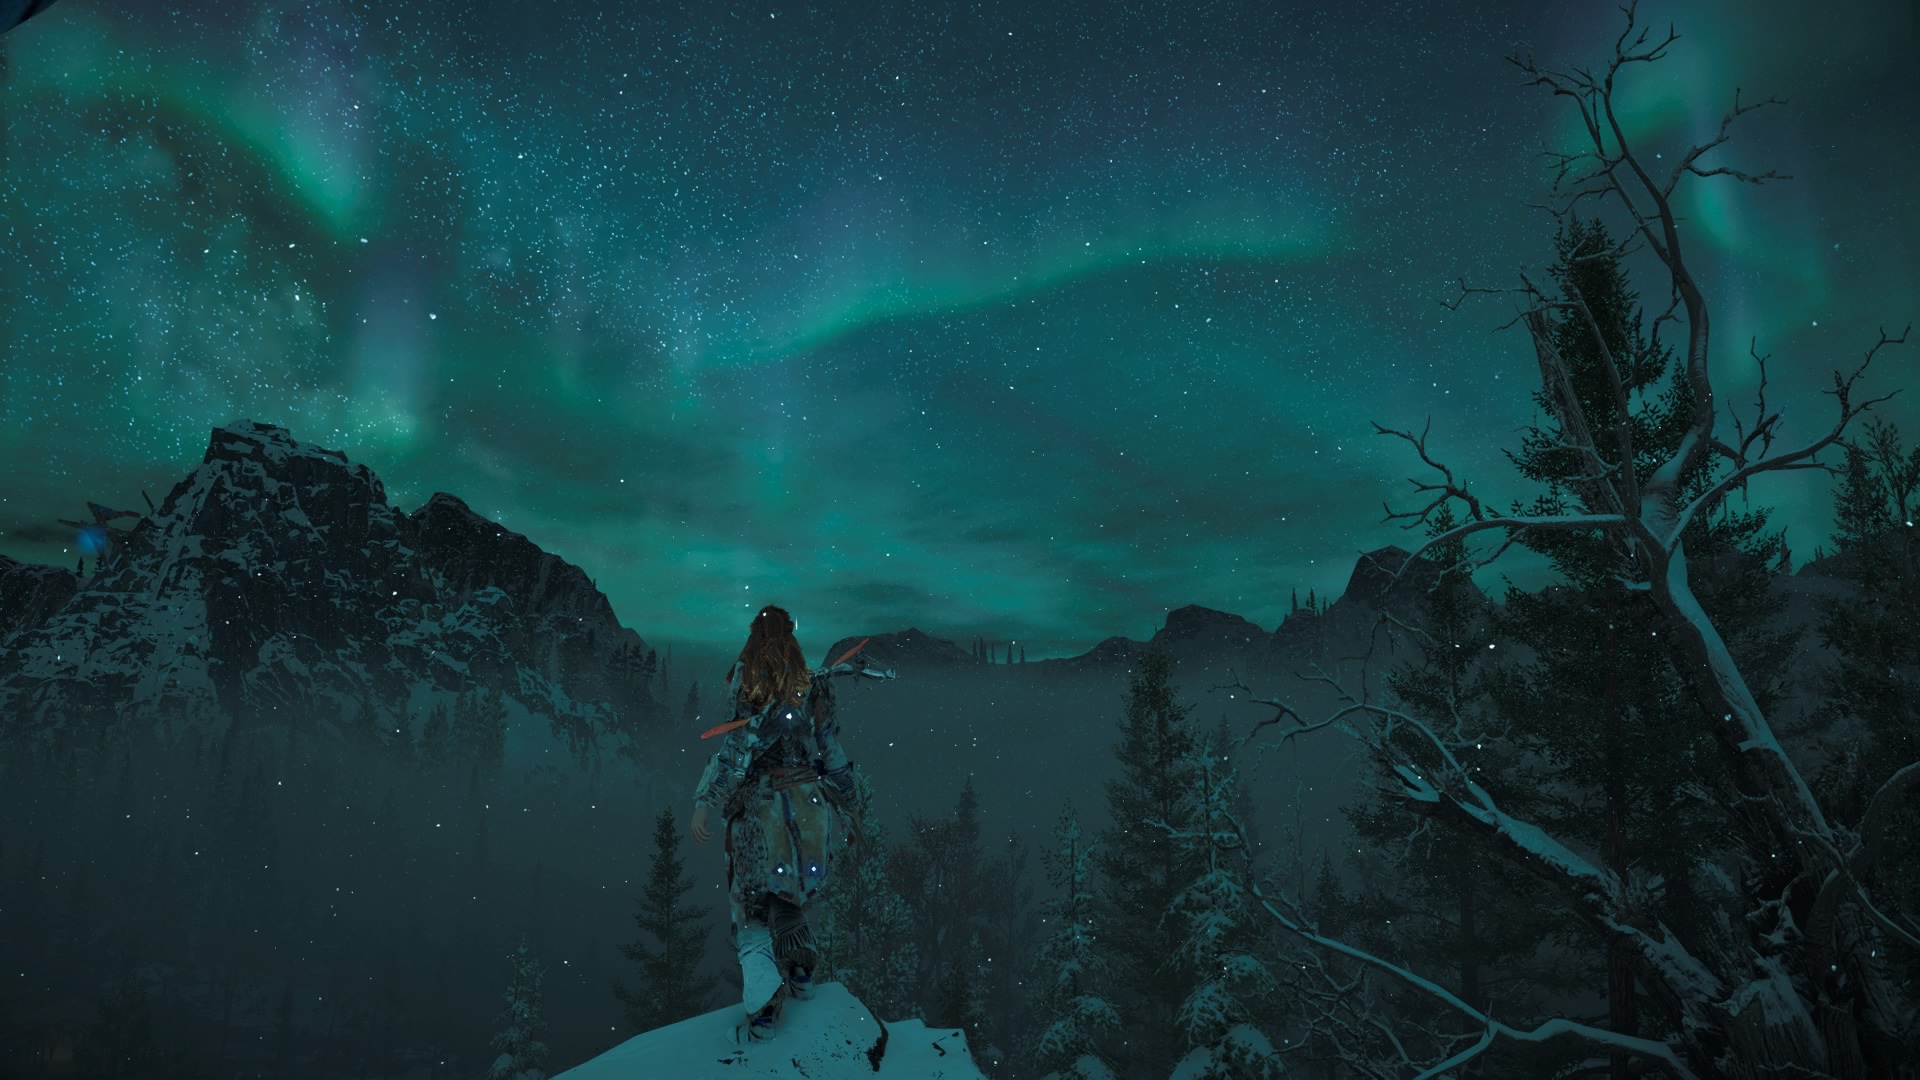 El juego está lleno de de agradables sorpresas visuales, como las auroras boreales.